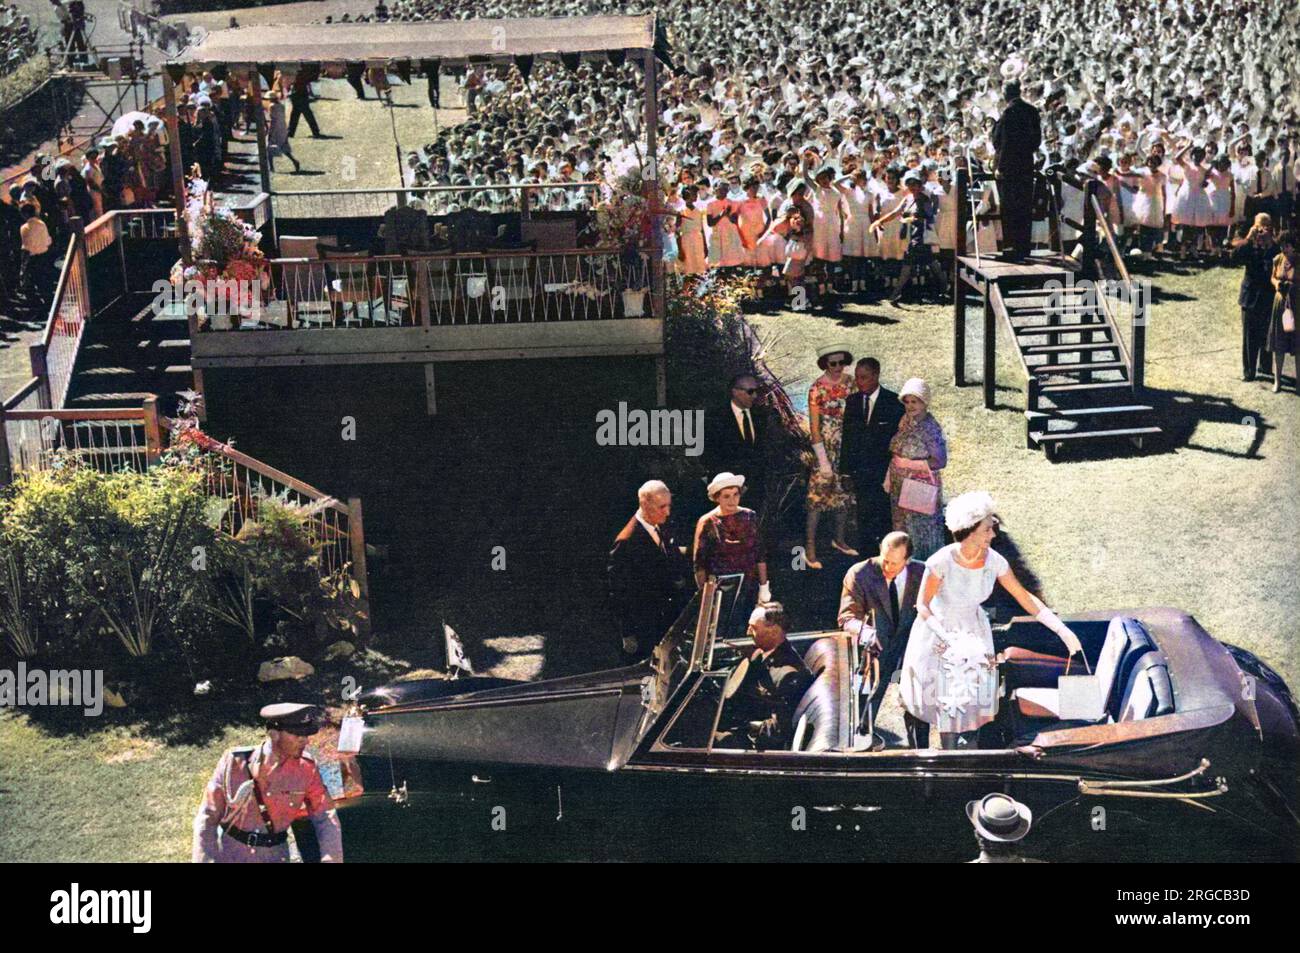 Königin Elizabeth II. Und Prinz Philip verlassen die Rennbahn im Victoria Park in Adelaide, nachdem ein Chor mit 3000 Kindern australische Lieder gesungen hat. Weitere 70.000 Kinder nahmen an der Veranstaltung Teil. Stockfoto